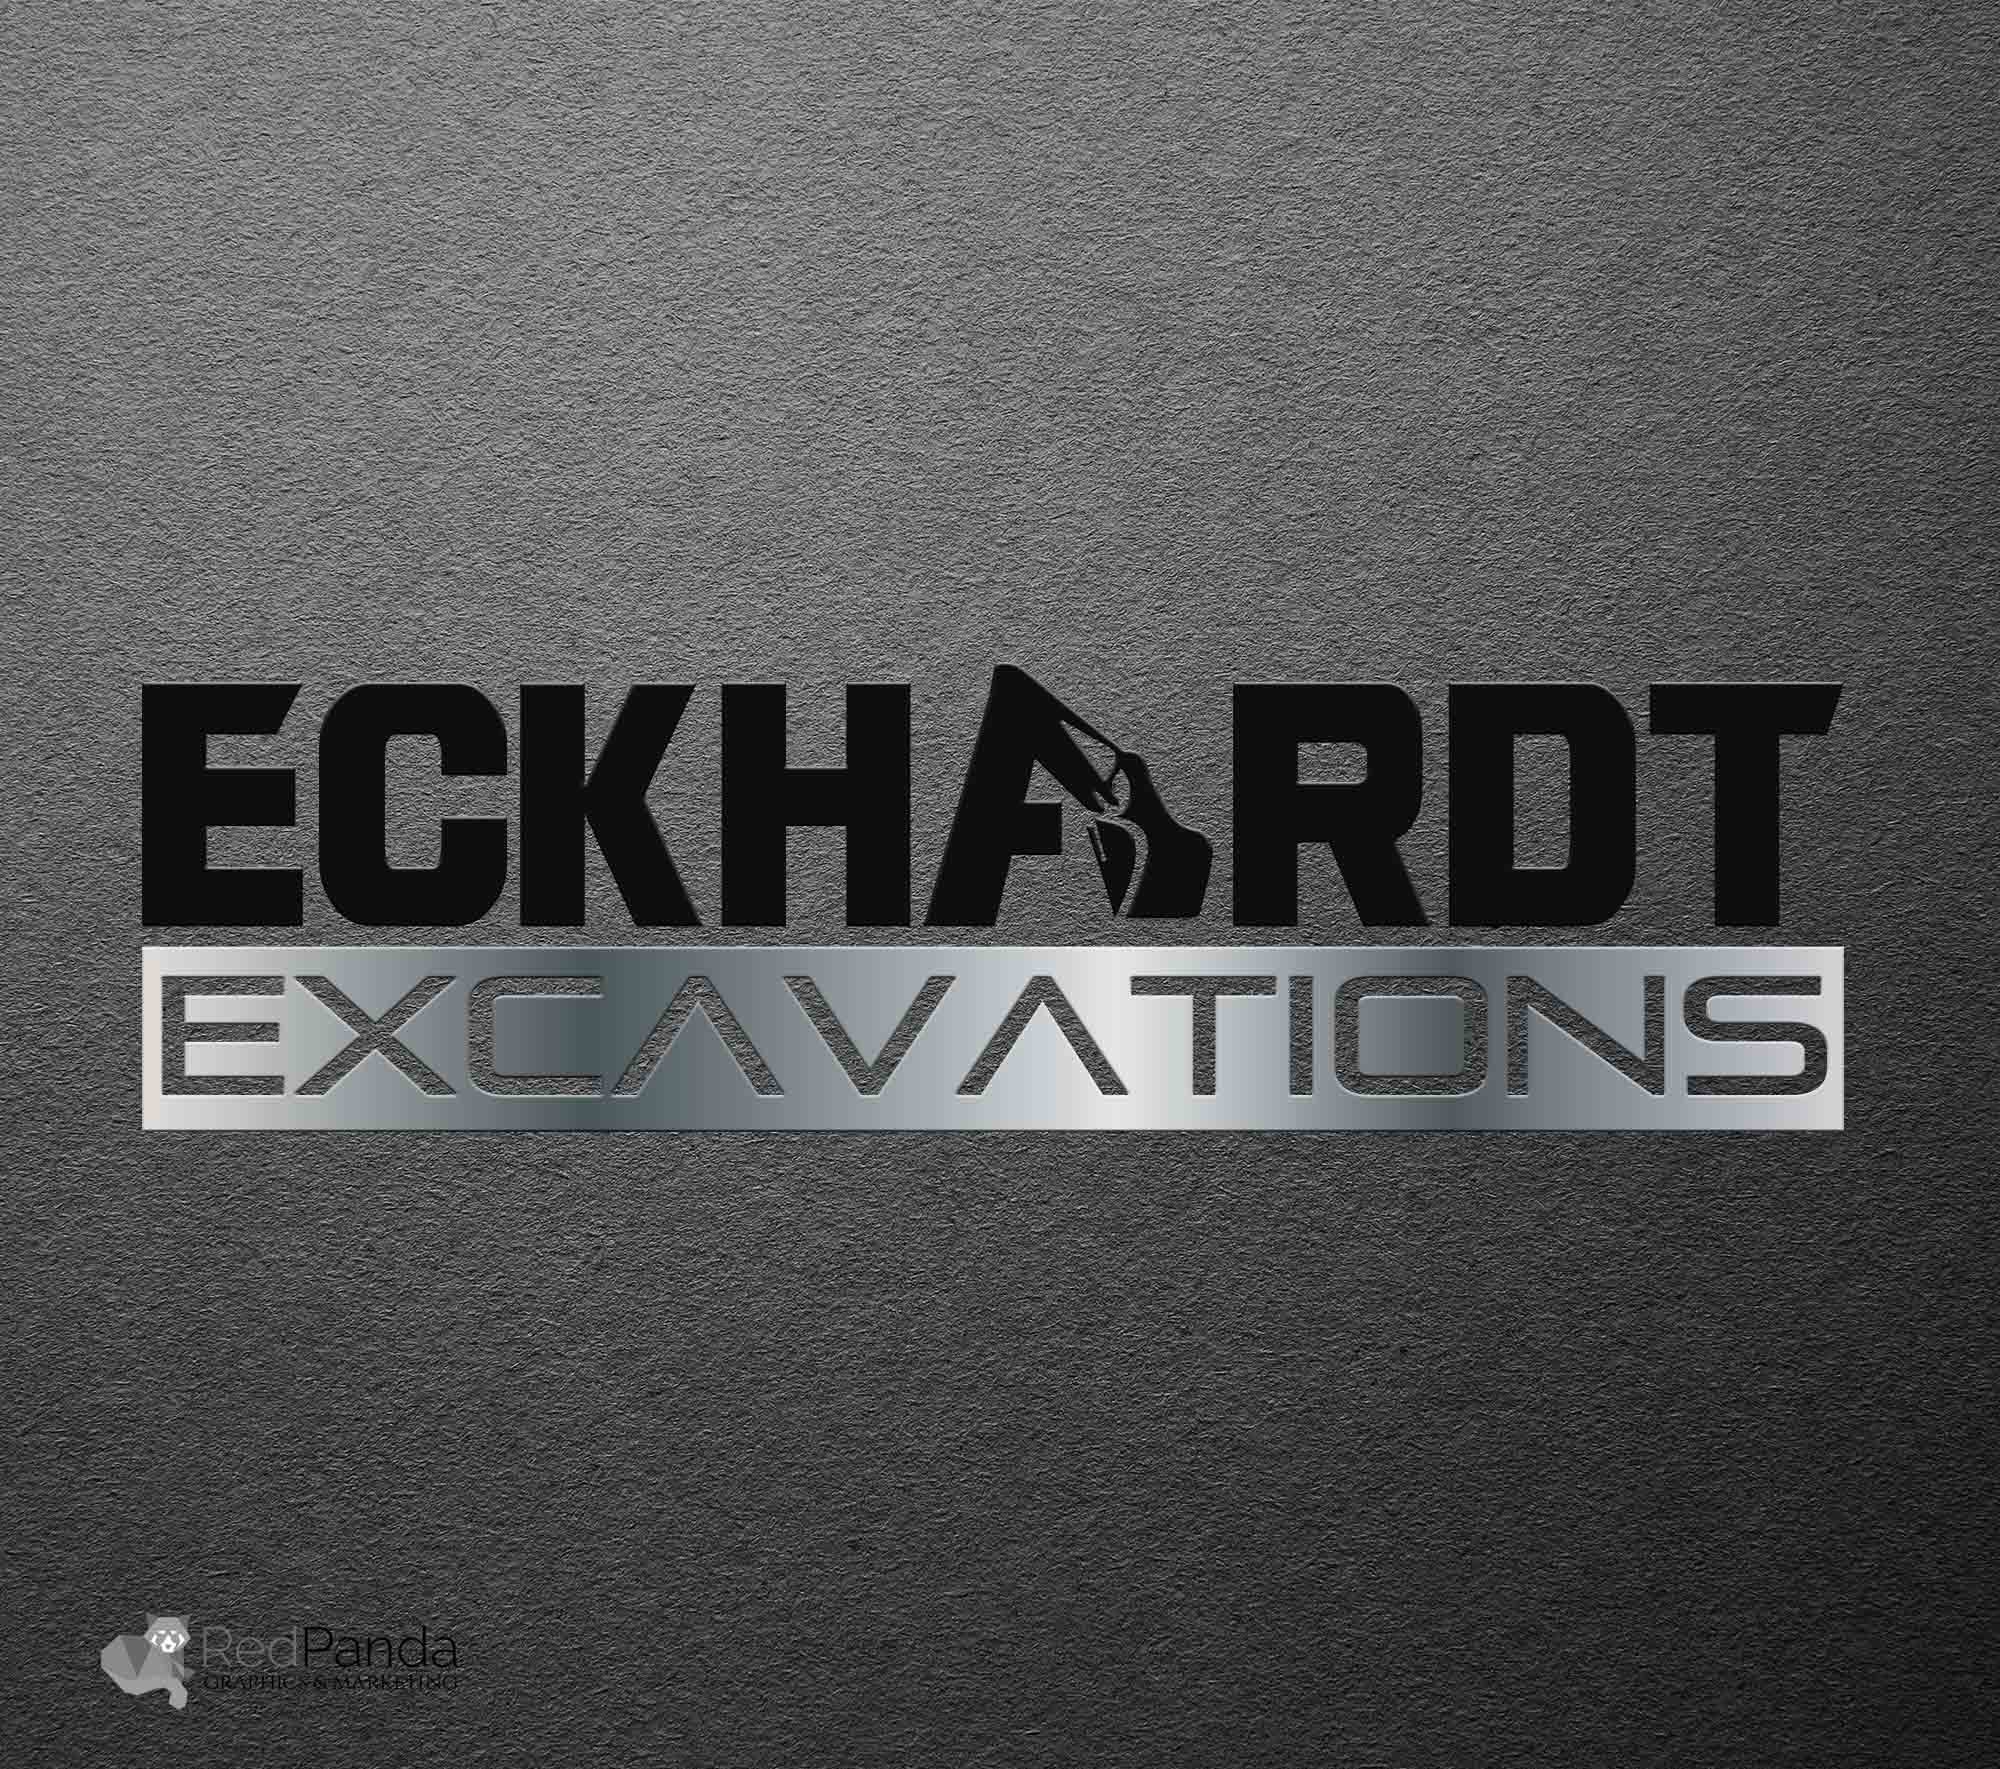 Logo Design - Eckhardt Excavation